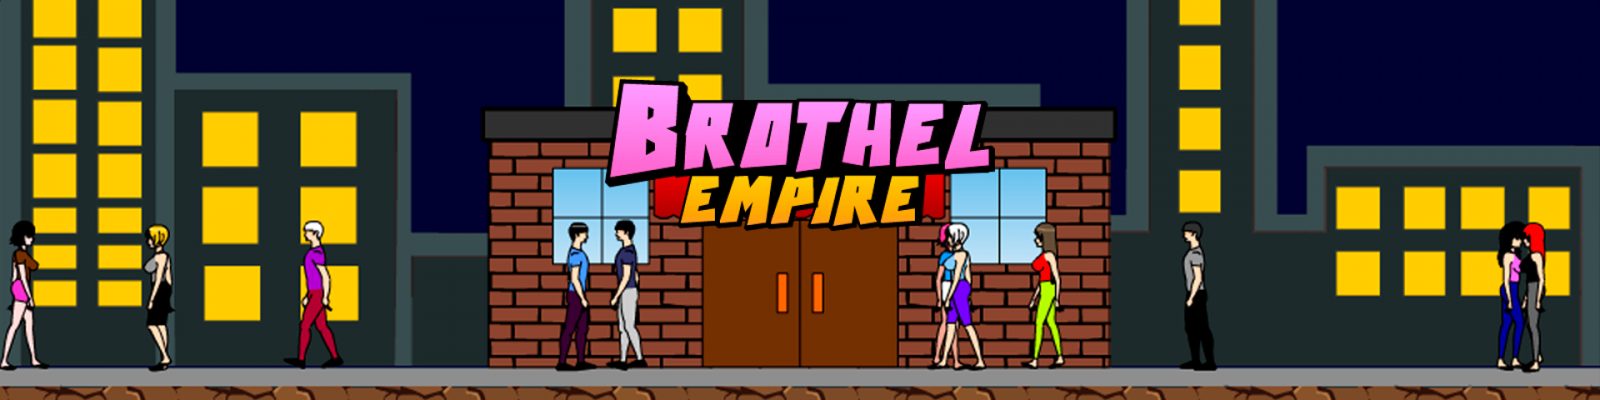 celebrity brothel game download